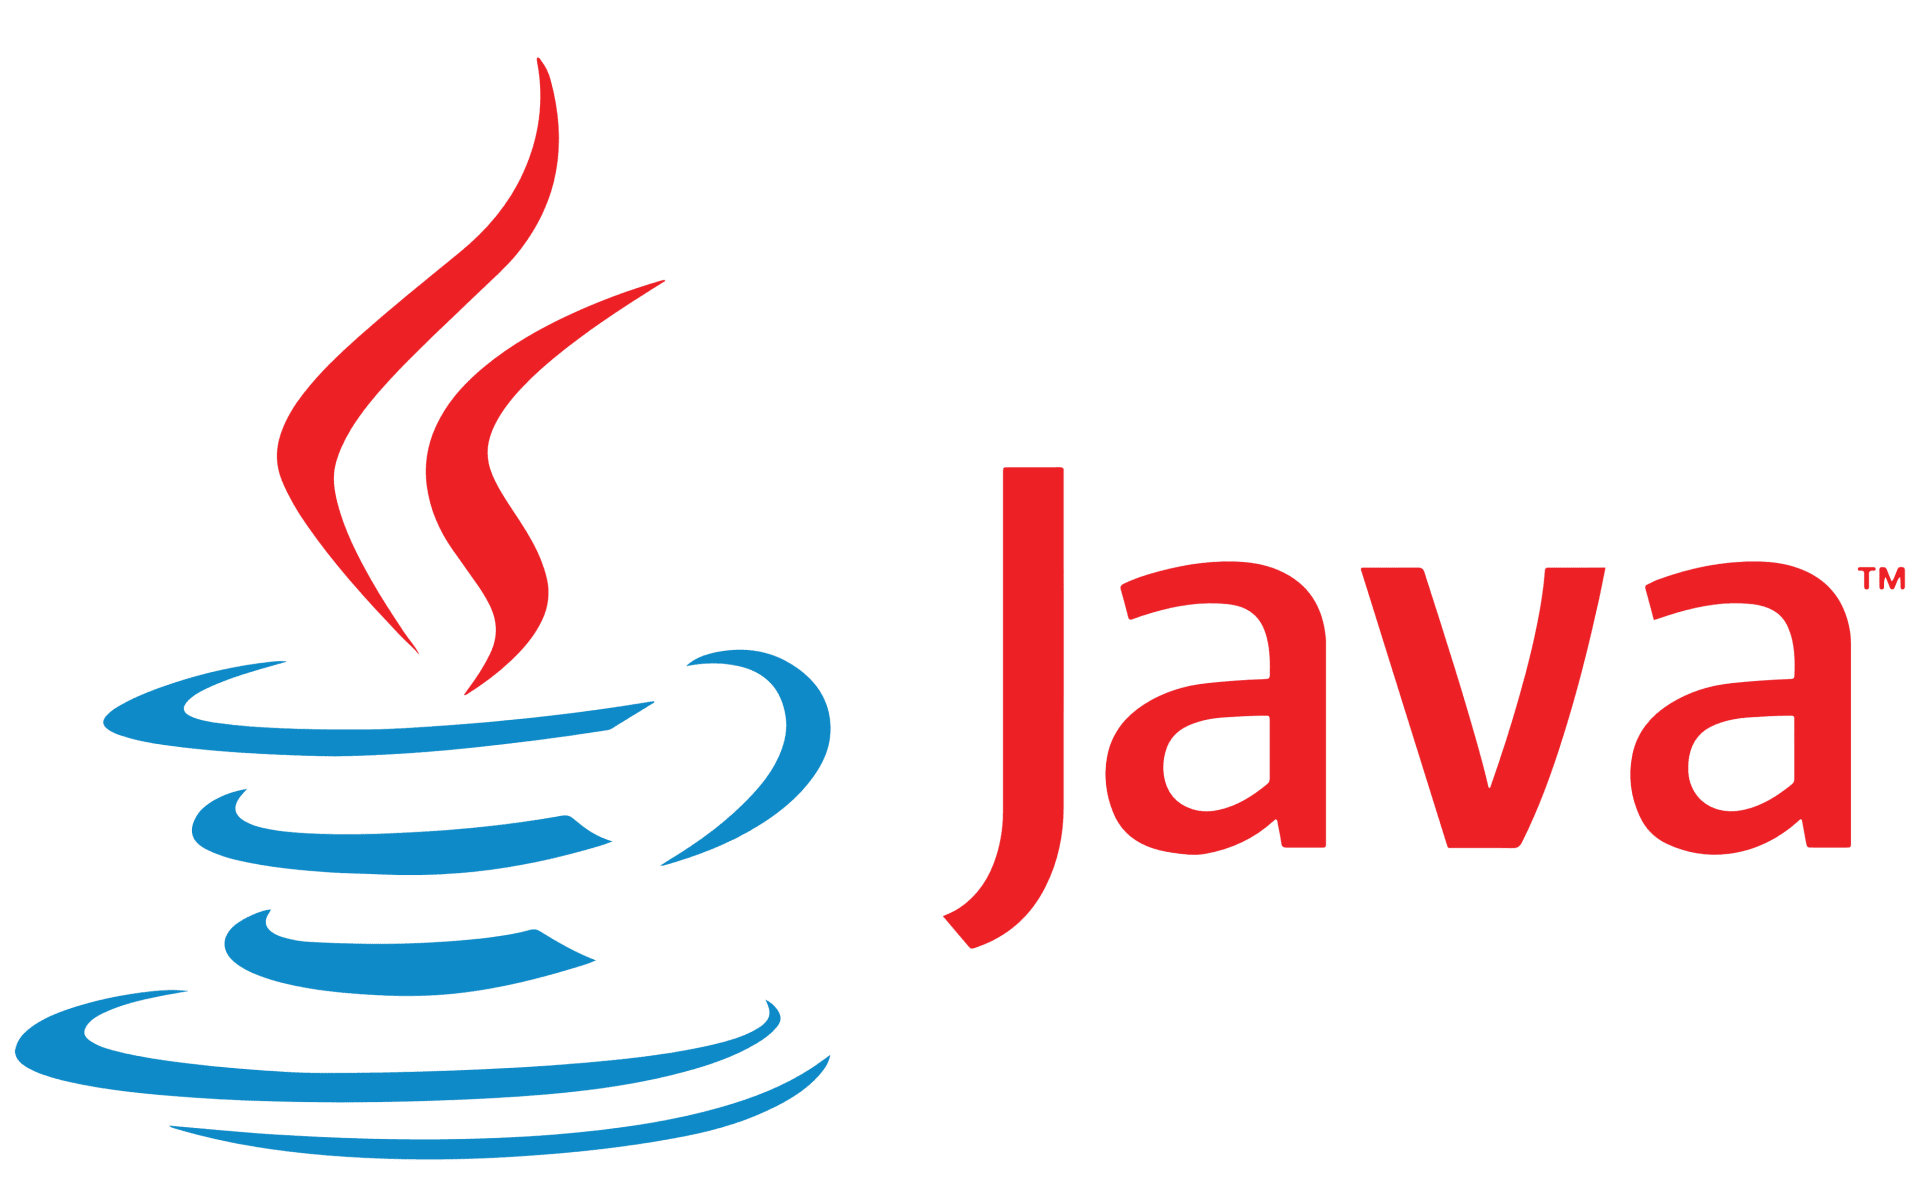 Java host. Java logo. JUNIT logo.